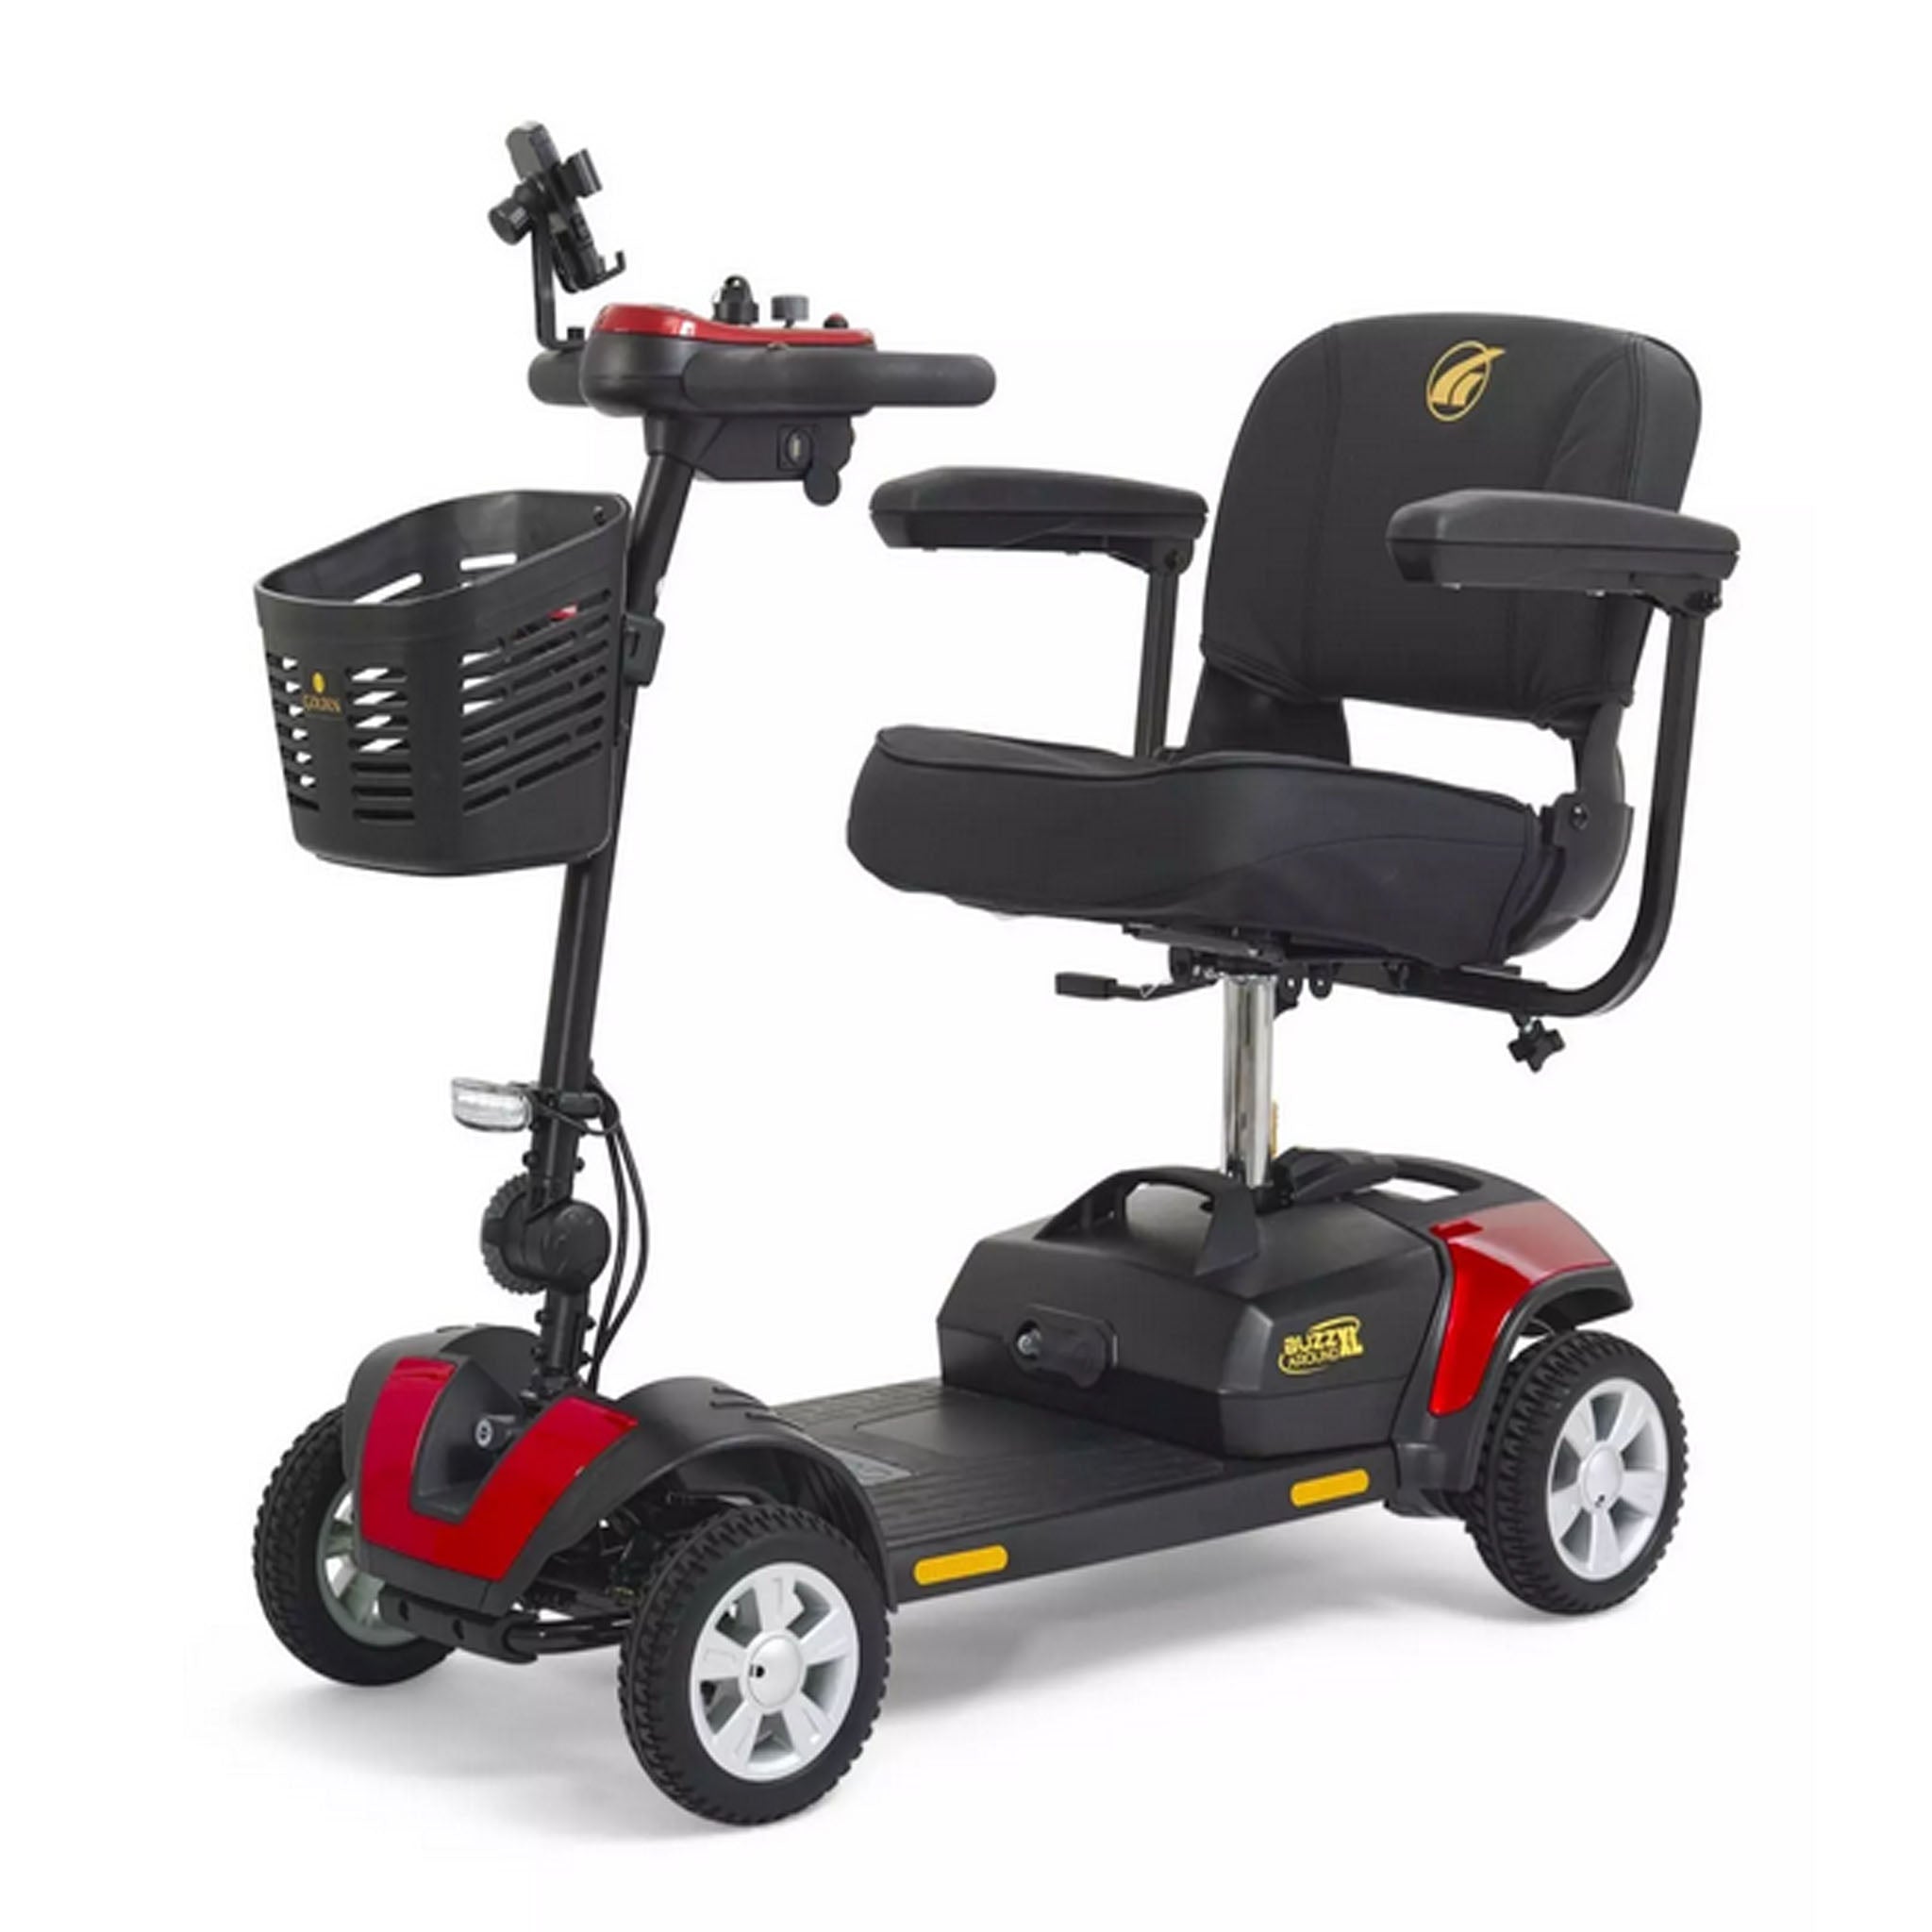 Golden Technologies Buzzaround XL 4 Wheel Scooter